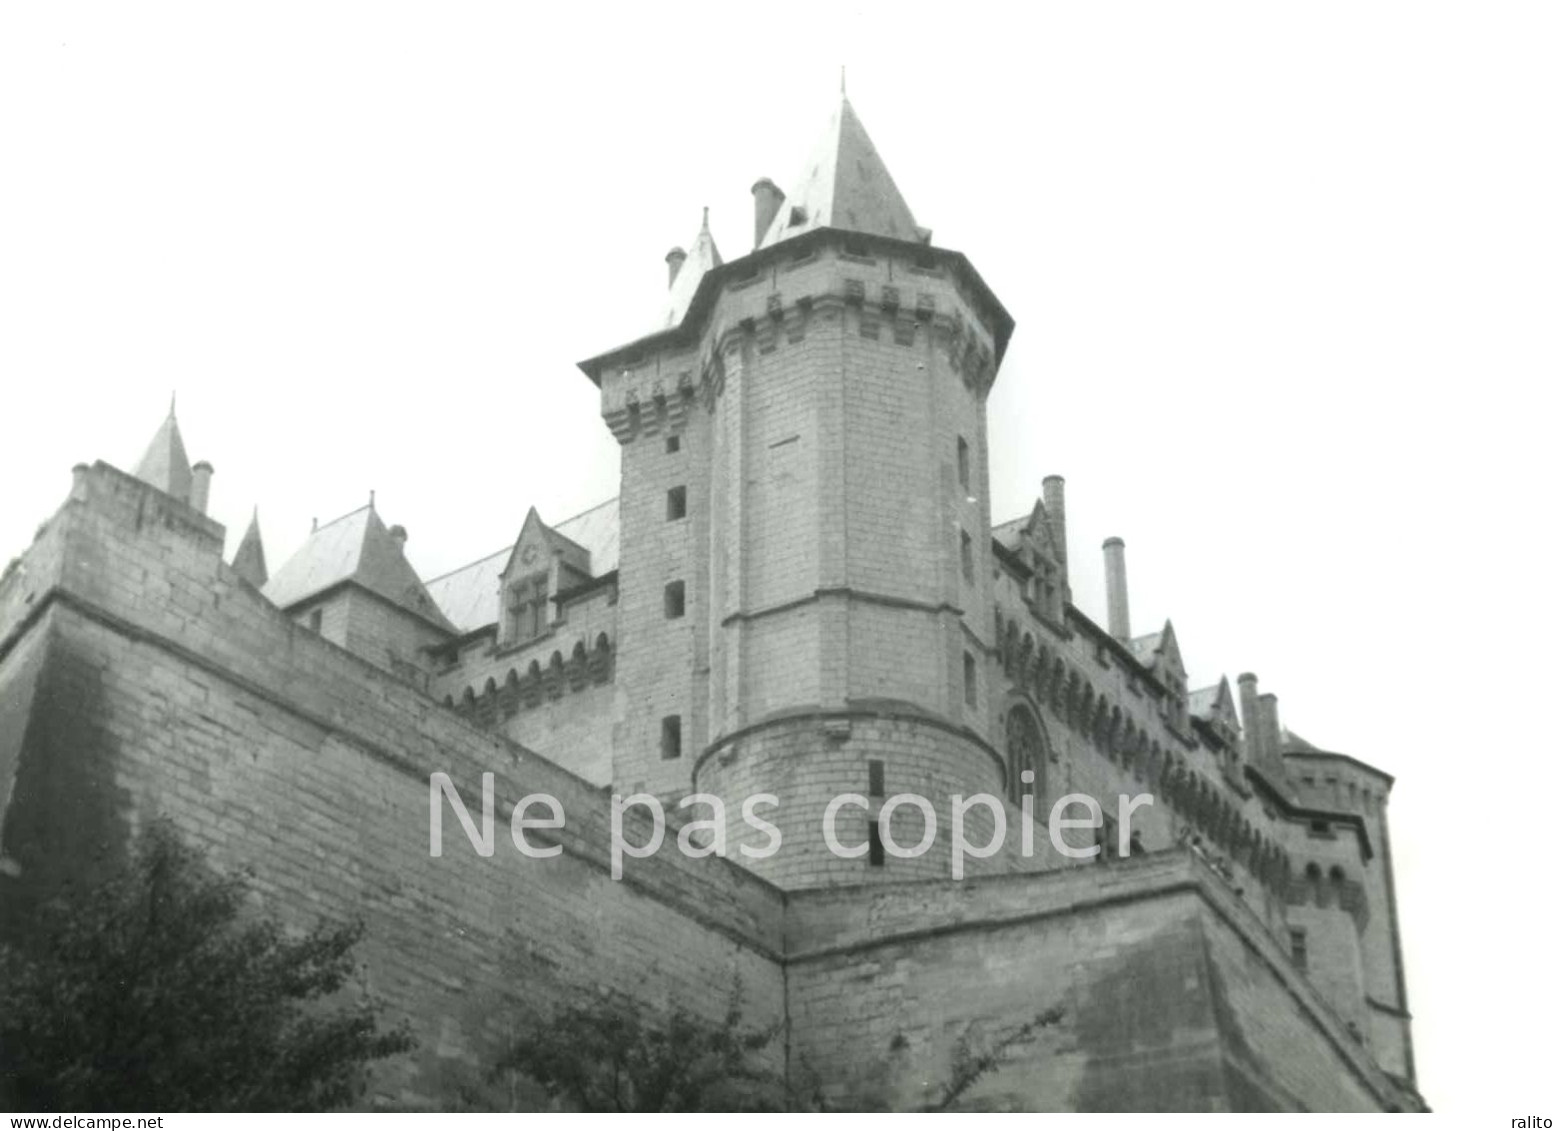 SAUMUR Vers 1960 Le Château Photo 14 X 20 Cm  MAINE-ET-LOIRE - Places